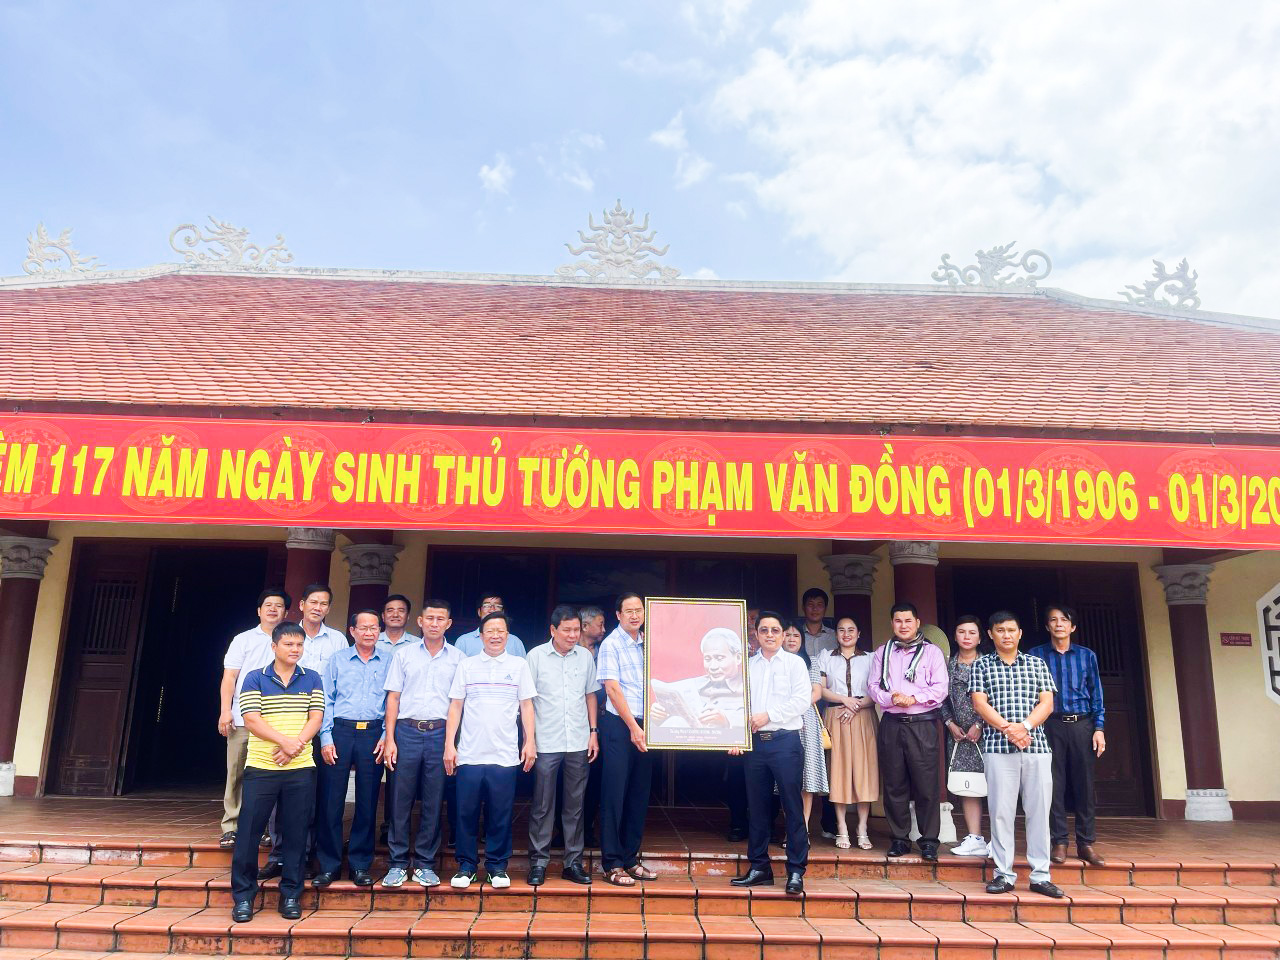 Lãnh đạo huyện Mộ Đức trao tặng bức ảnh chân dung cố Thủ tướng Phạm Văn Đồng cho Đoàn công tác huyện Châu Đức.